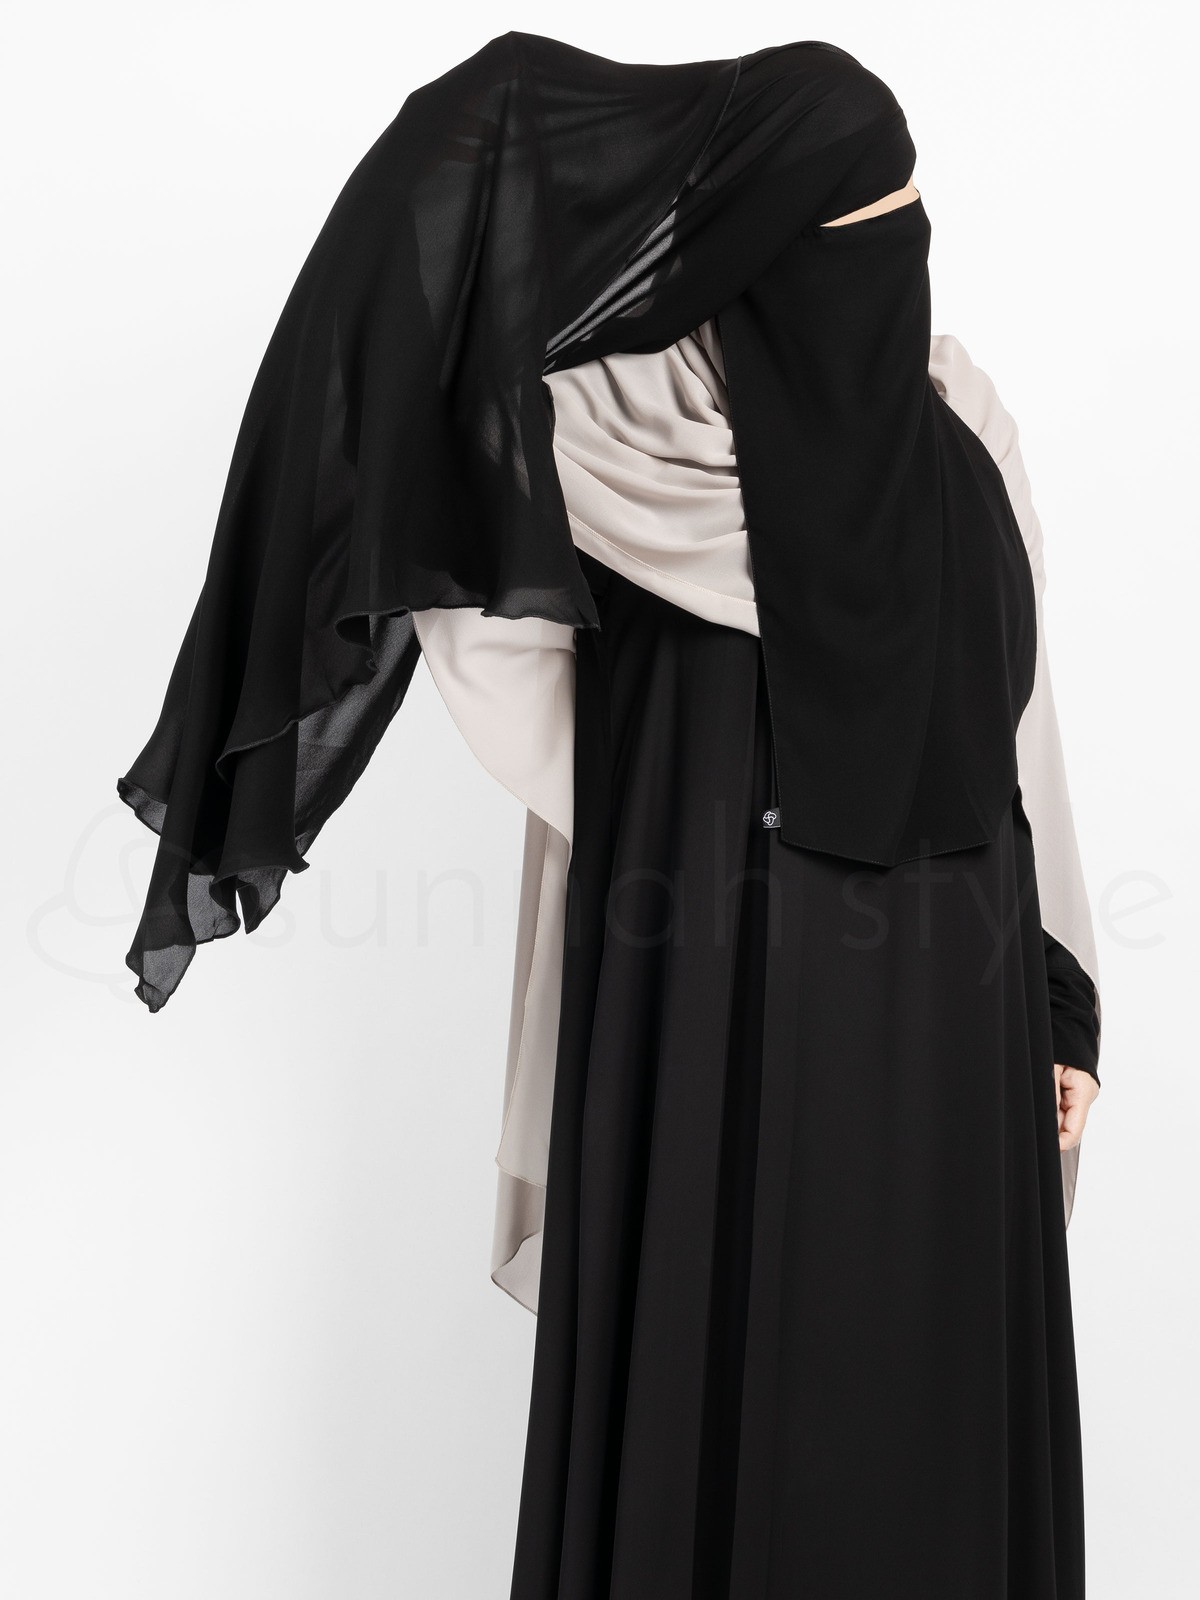 Sunnah Style - Extra Long Diamond Niqab (Burgundy)